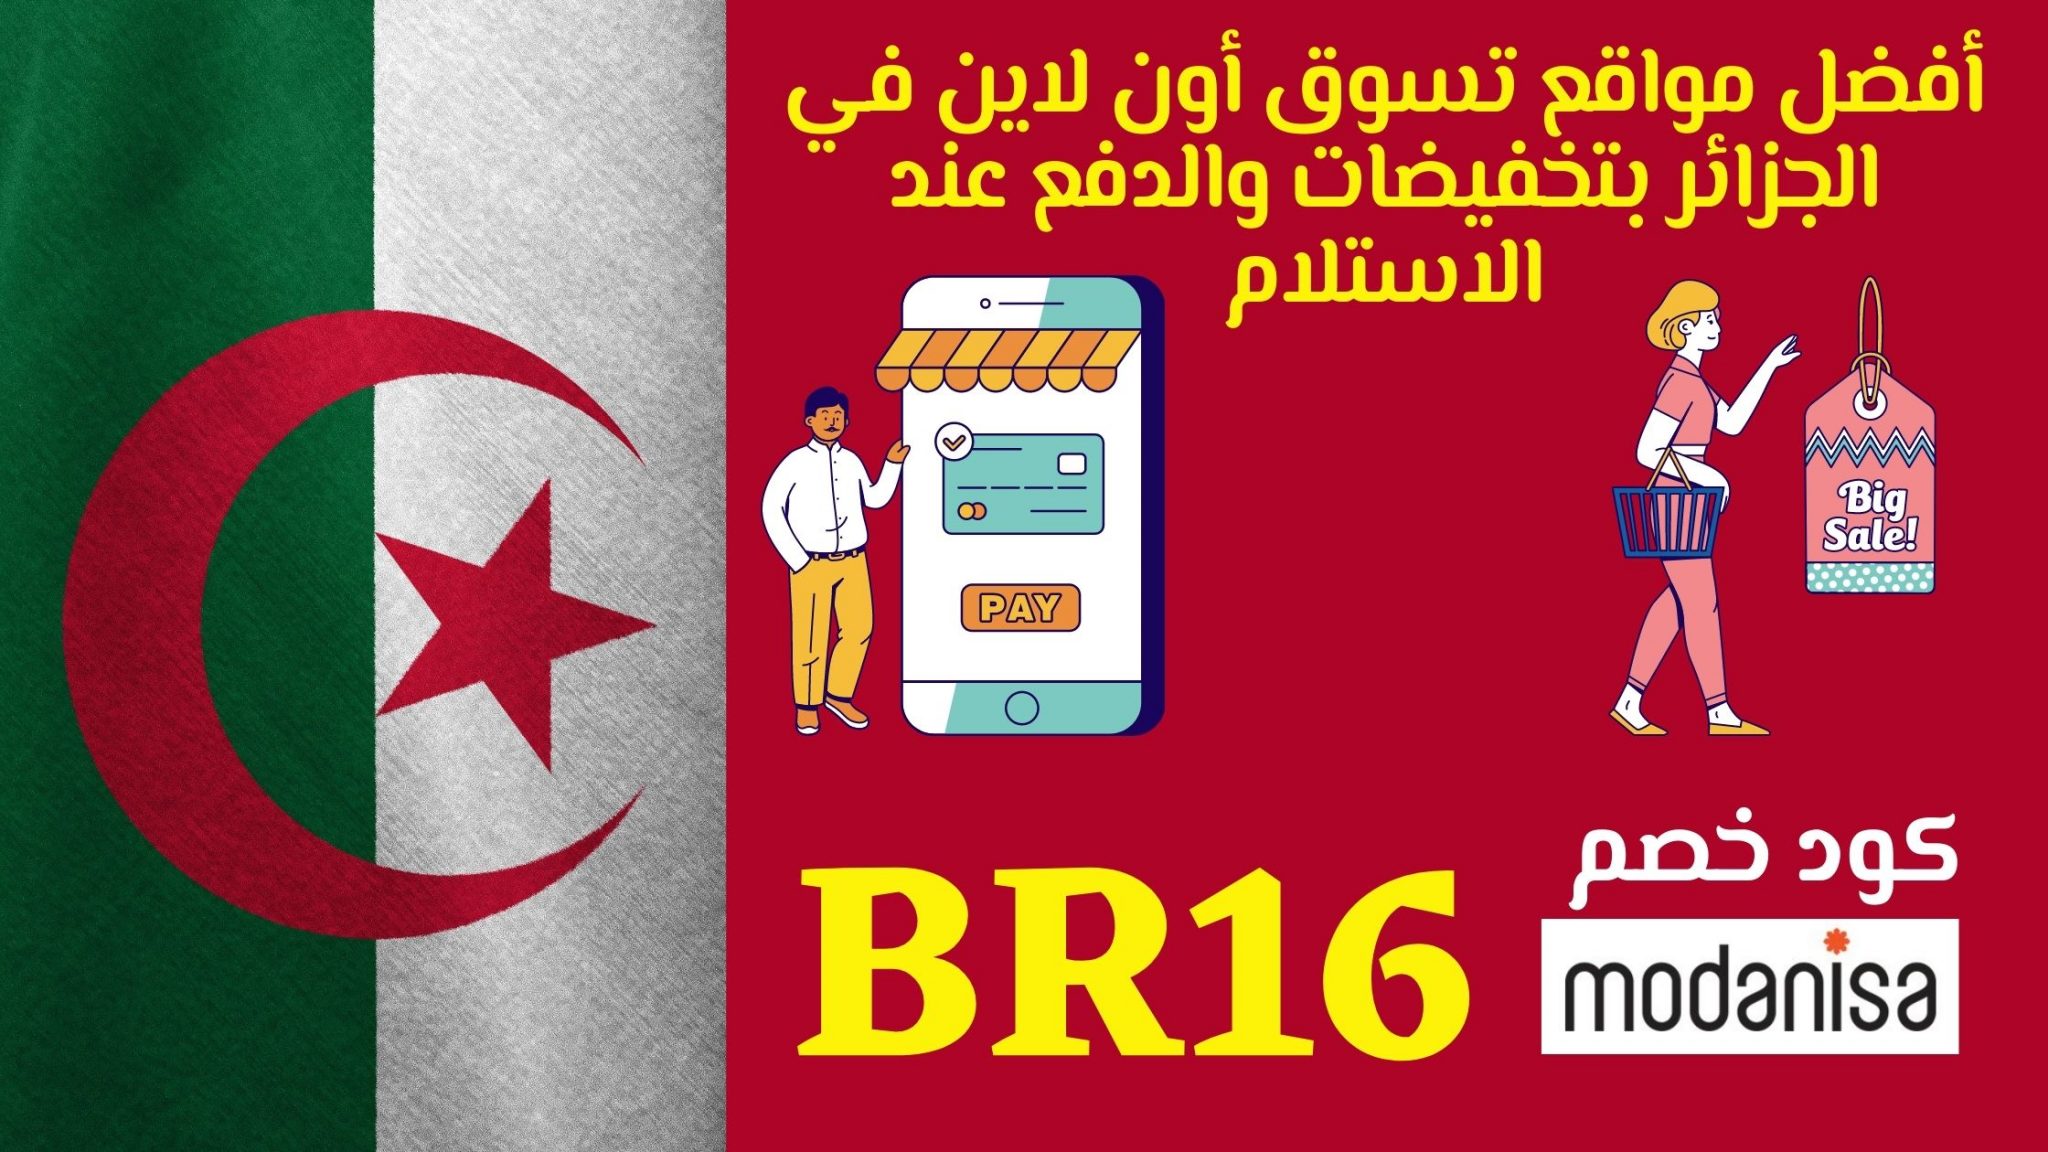 أفضل مواقع تسوق أون لاين في الجزائر